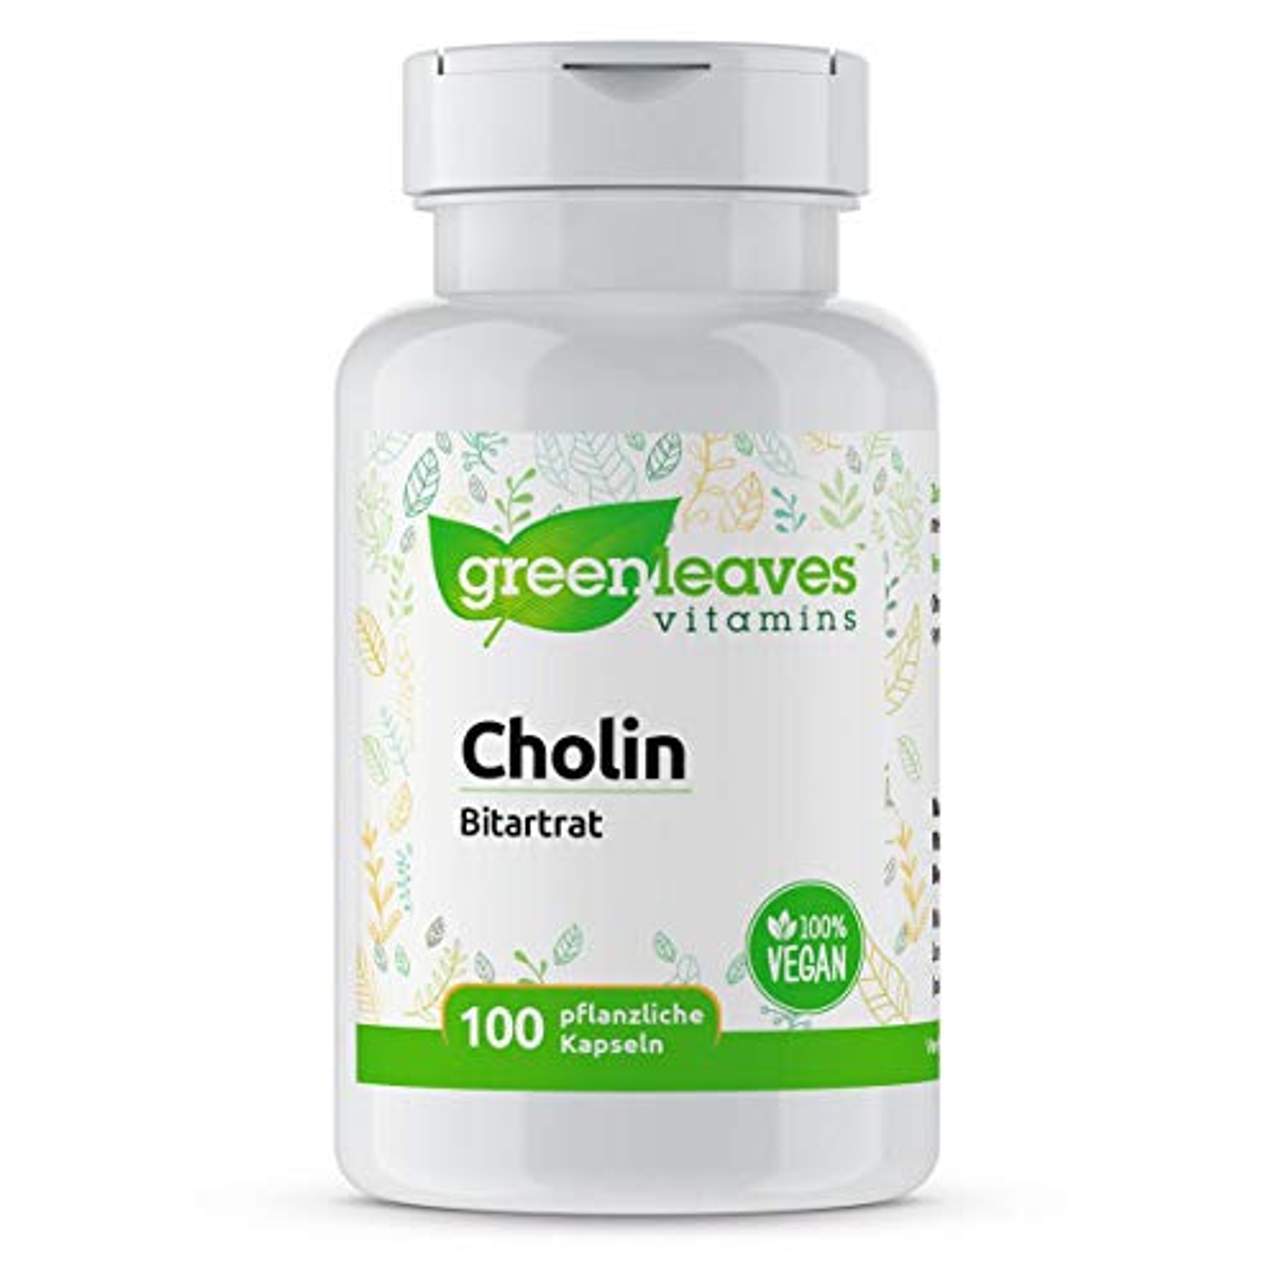 Greenleaves Vitamins Cholin 100 vegetarische Kapseln Bitartrat hochdosiert 500mg